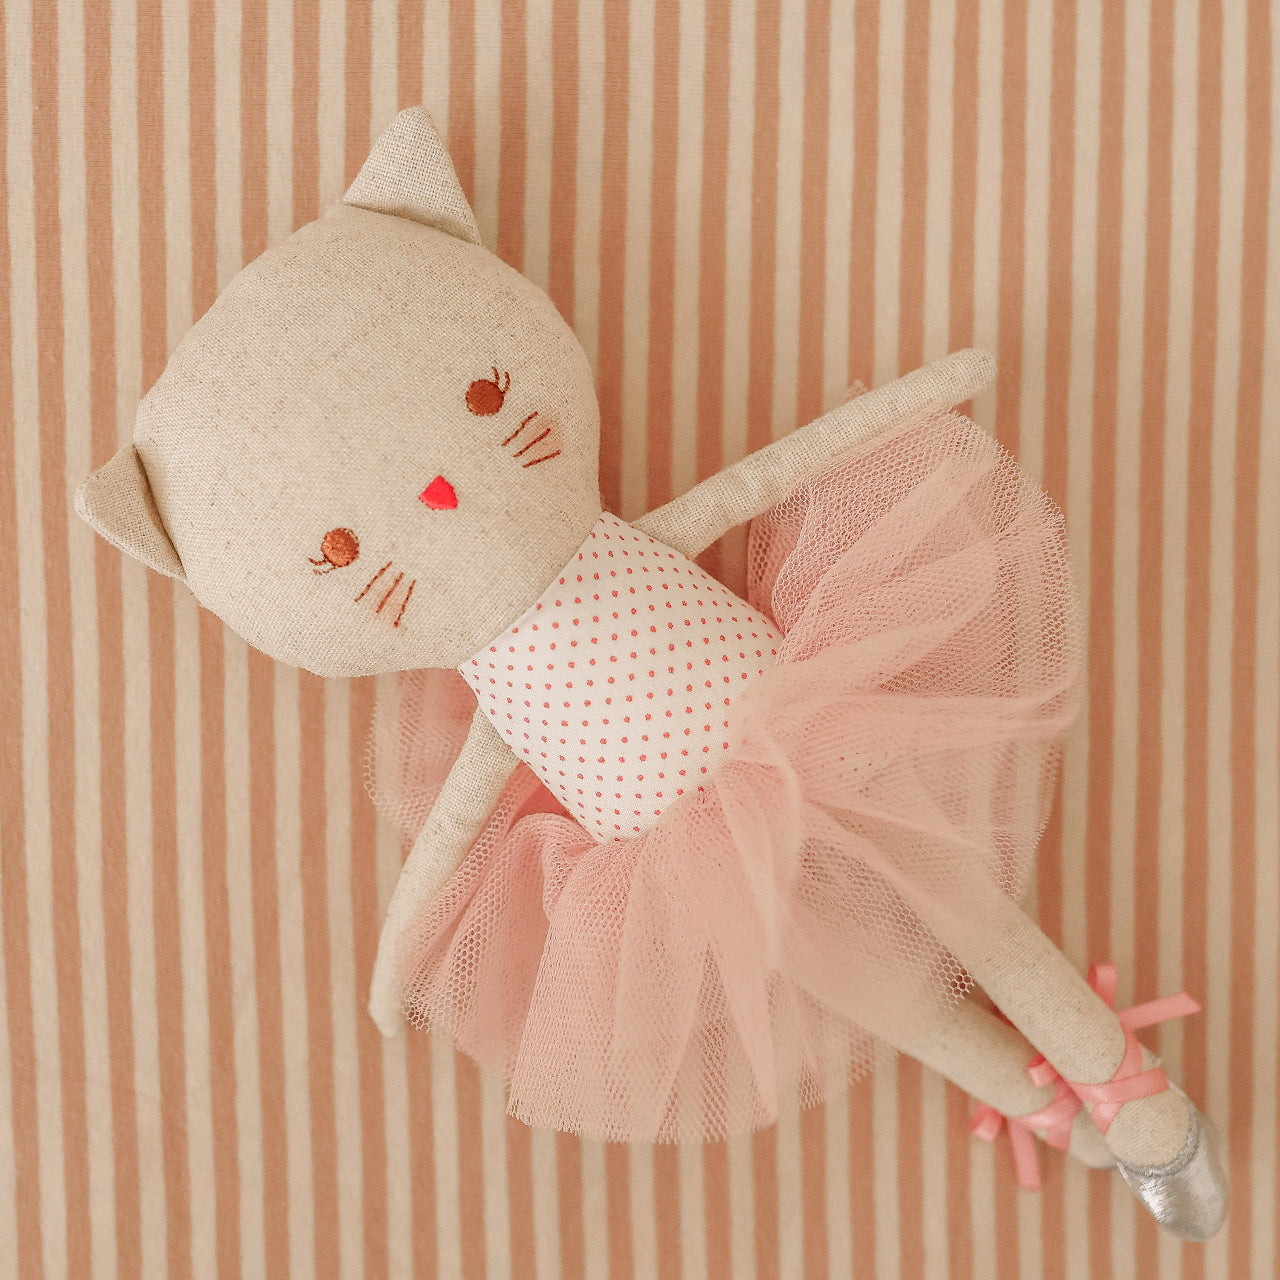 Odette Kitty Ballerina 25cm - Spot Pink